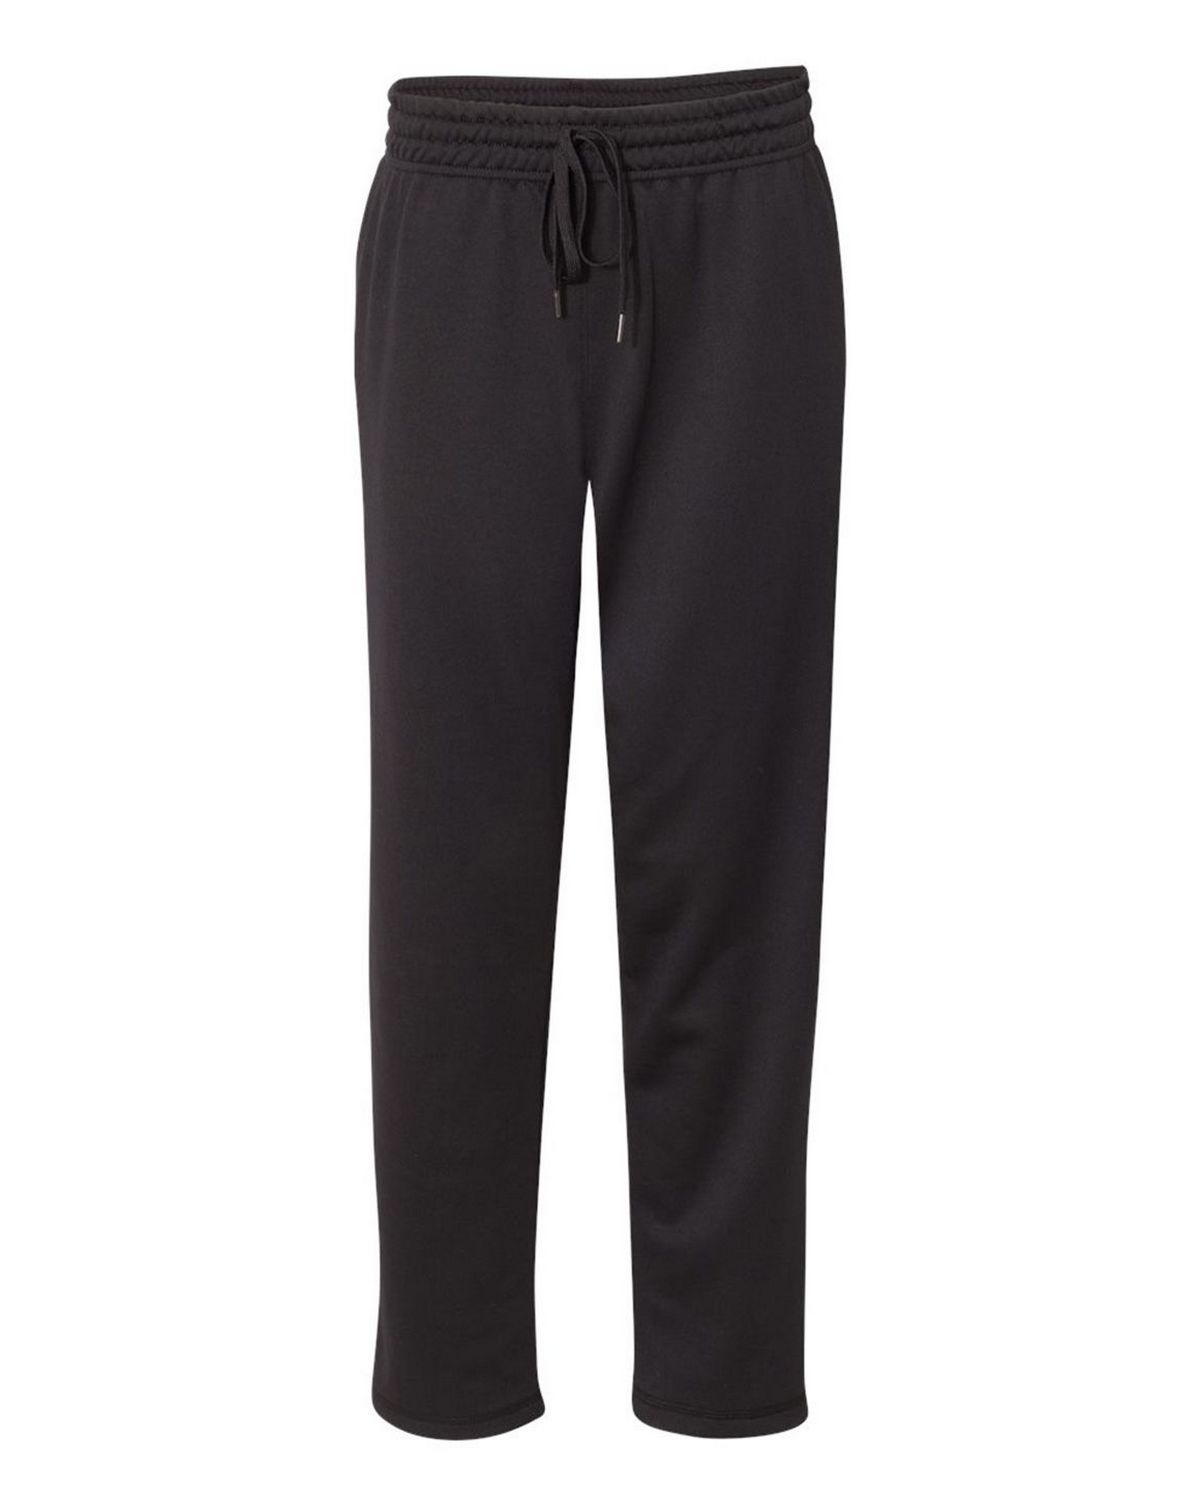 Shop Custom Gildan Sweatpants for Men and Women at ApparelnBags